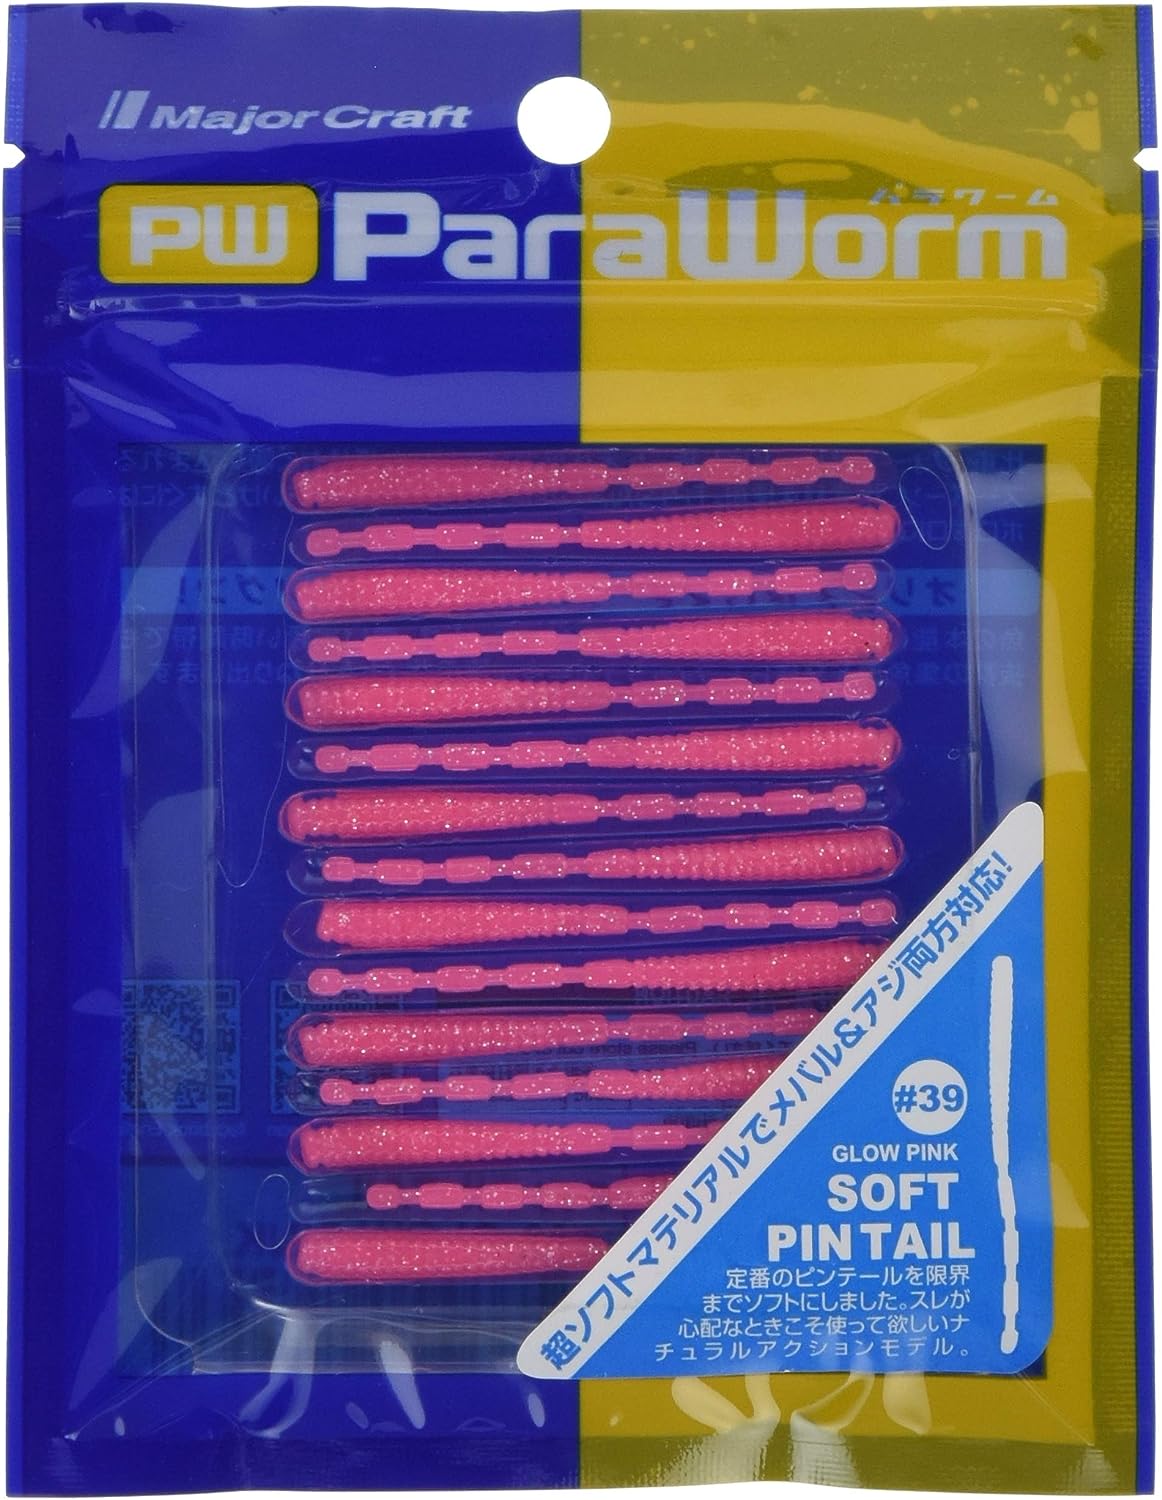 Artigianato maggiore, Major Craft Paraworm Soft Pintail Lures